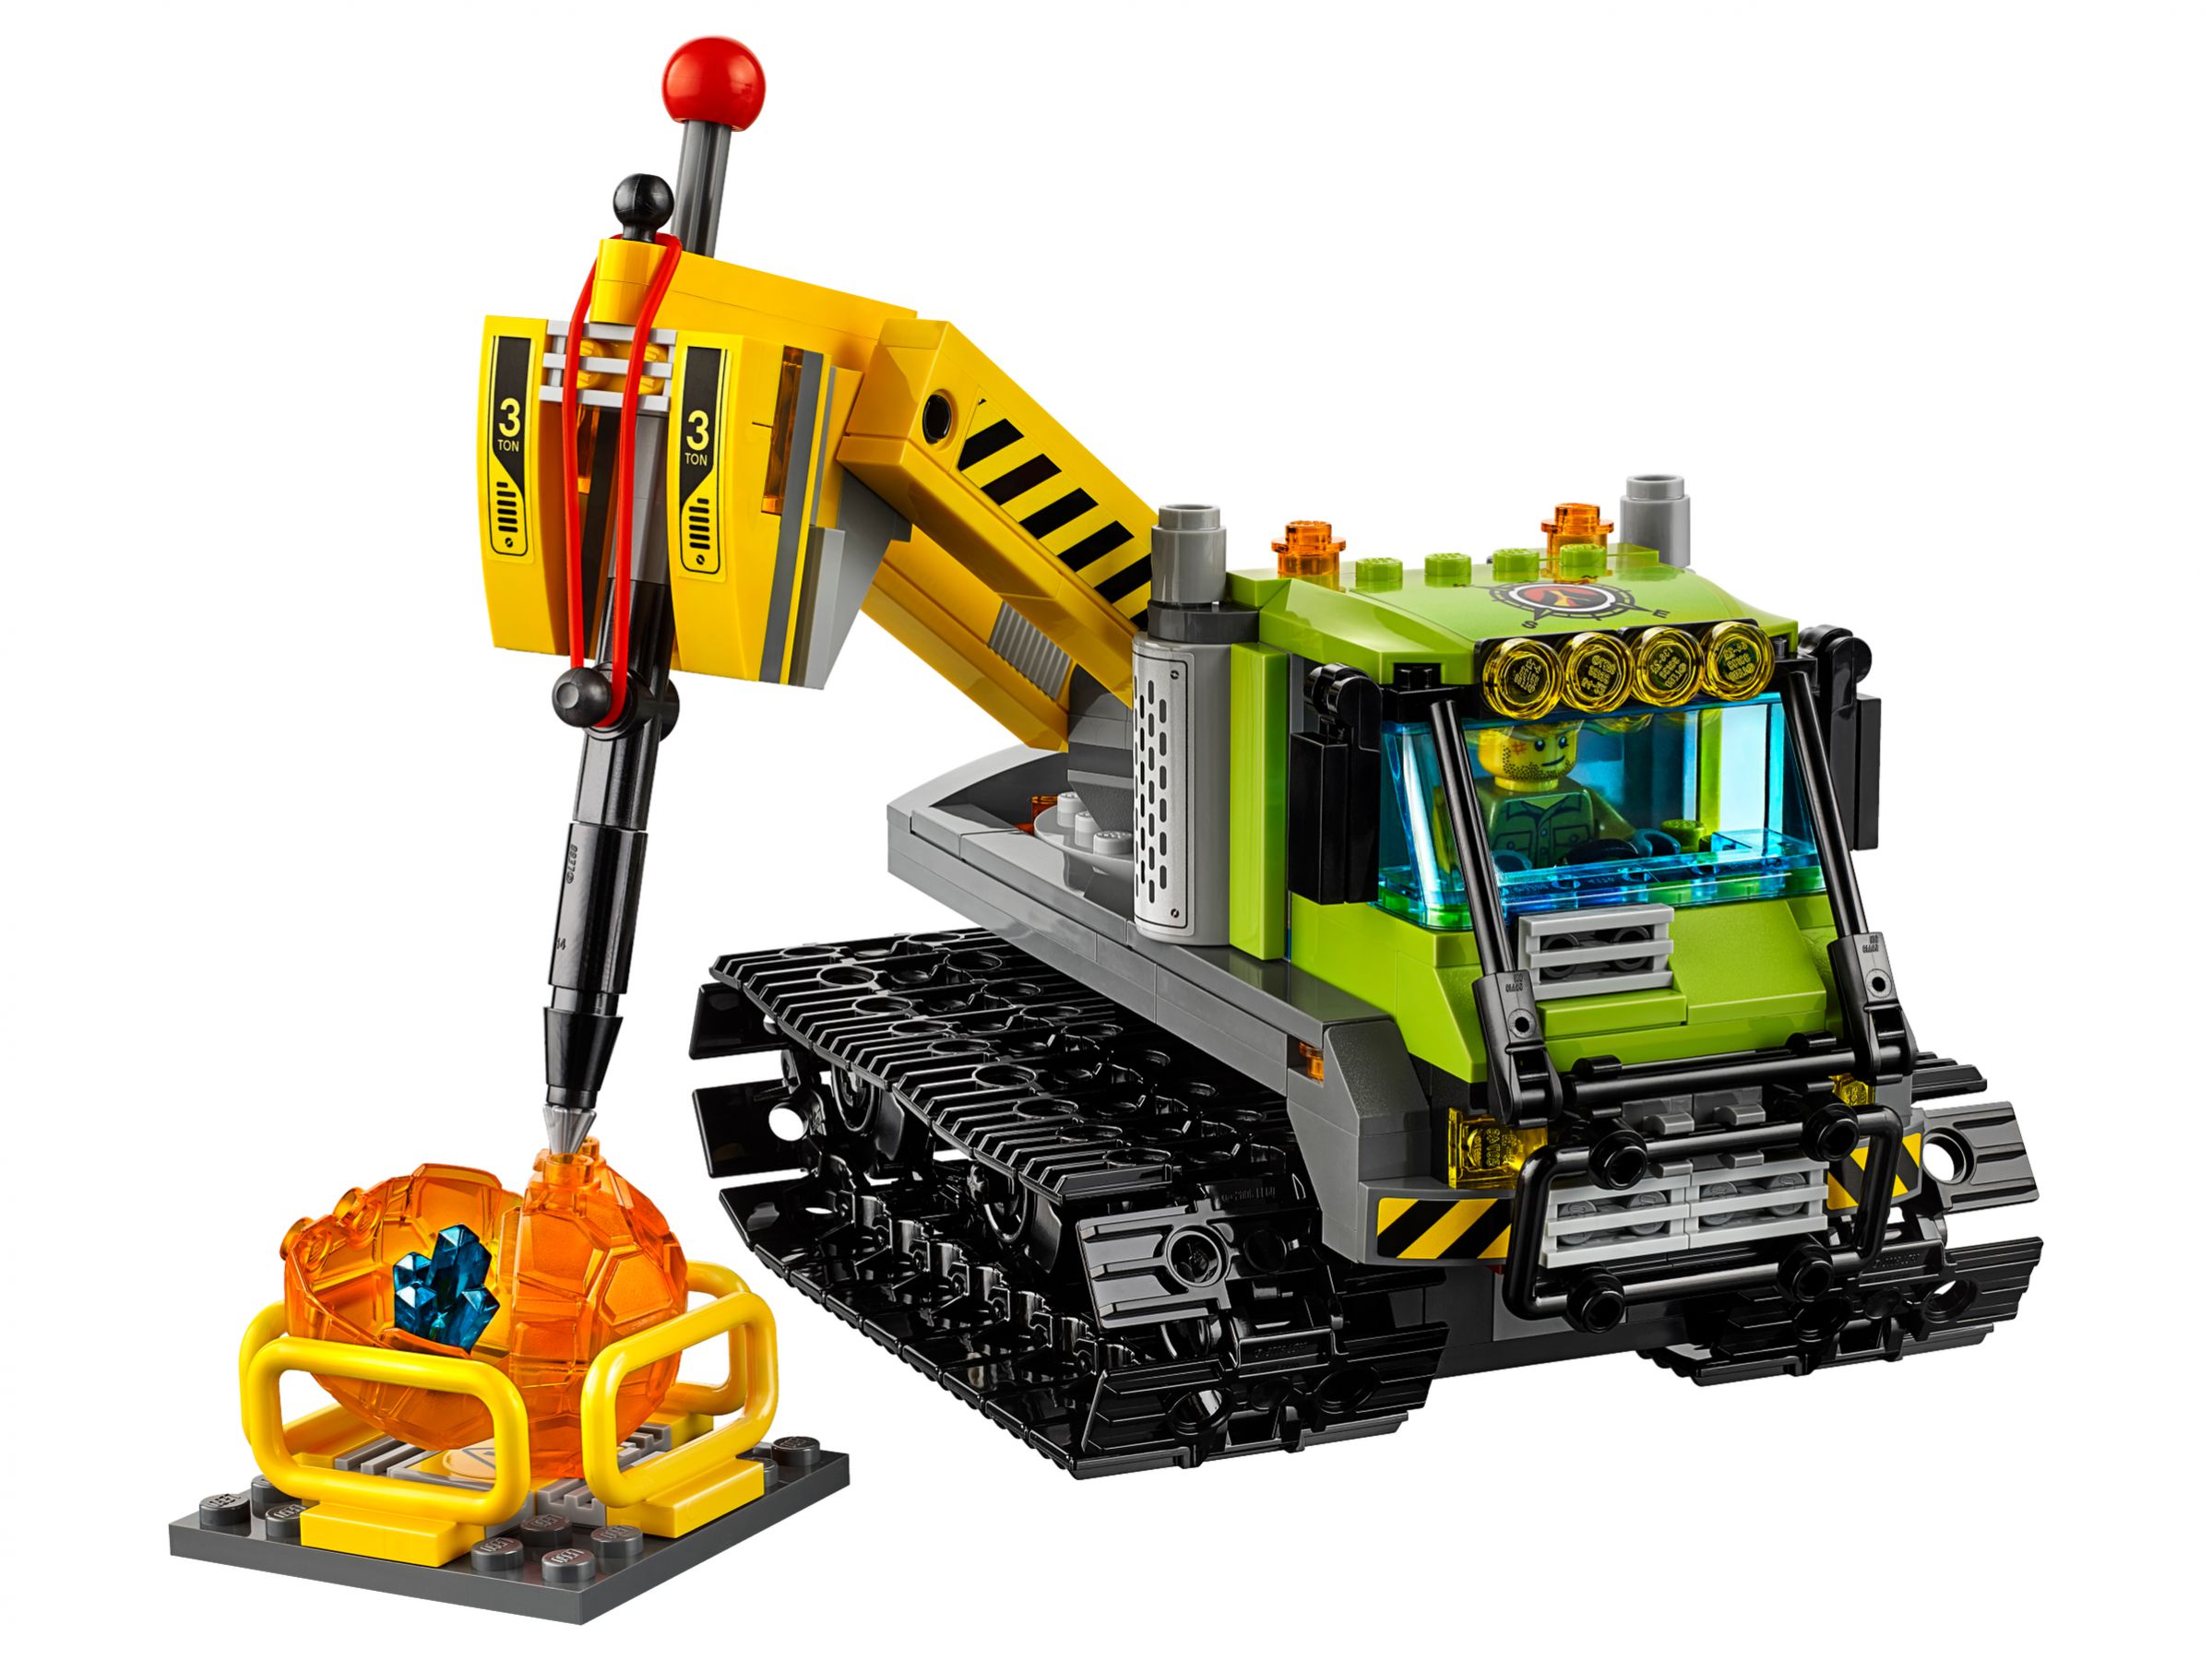 LEGO City 60122 Vulkan-Raupe LEGO_60122_alt2.jpg